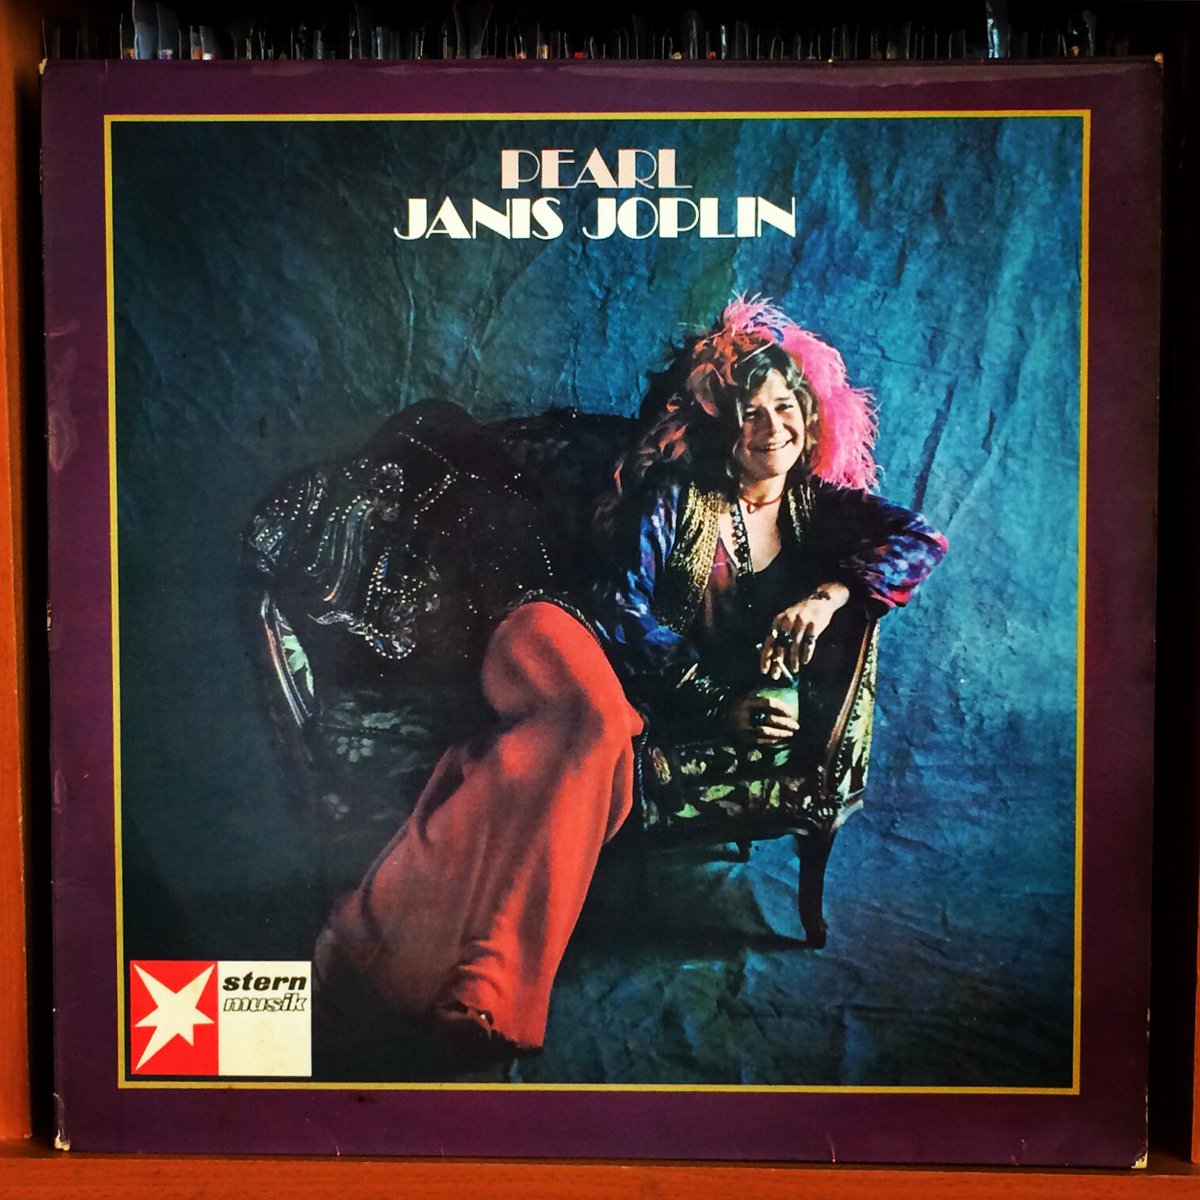 Couverture de l'album posthume Pearl (1971) de Janis Joplin.